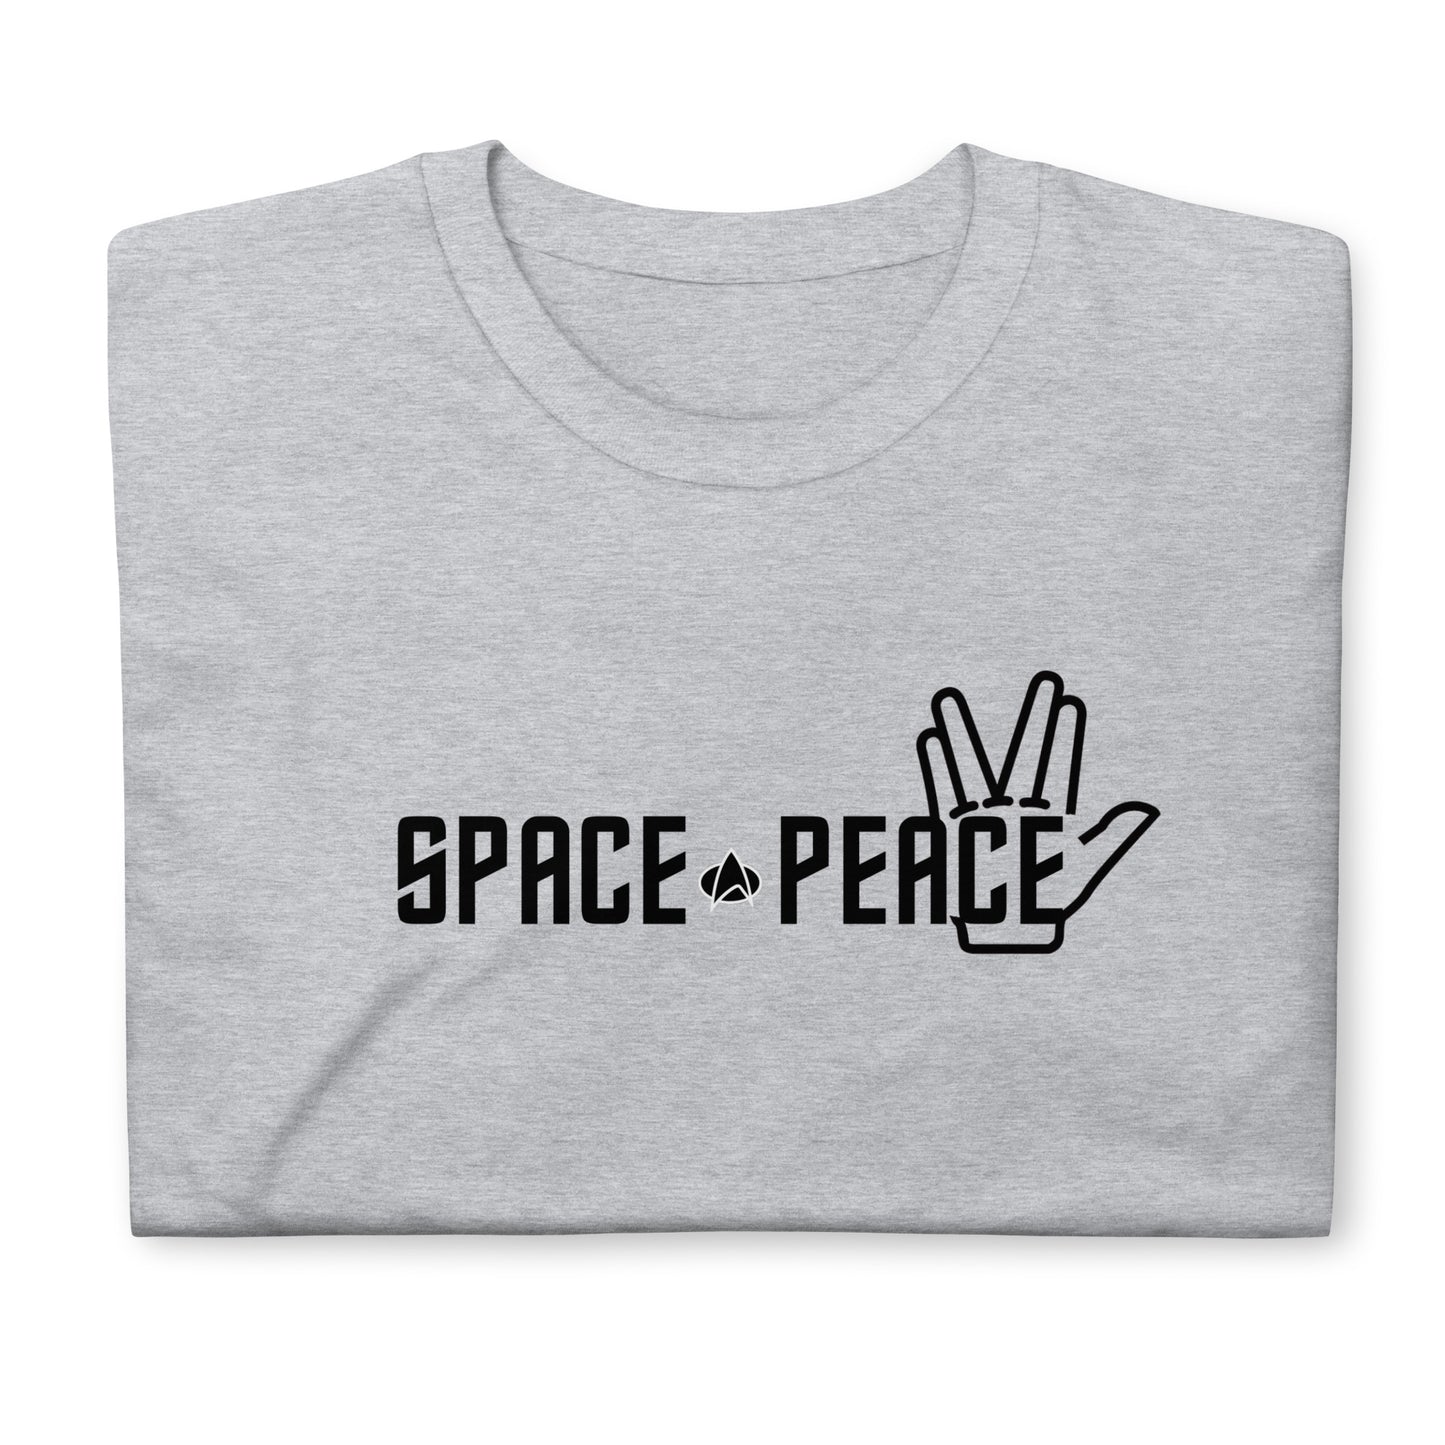 Trekkie Space Peace T-shirt!